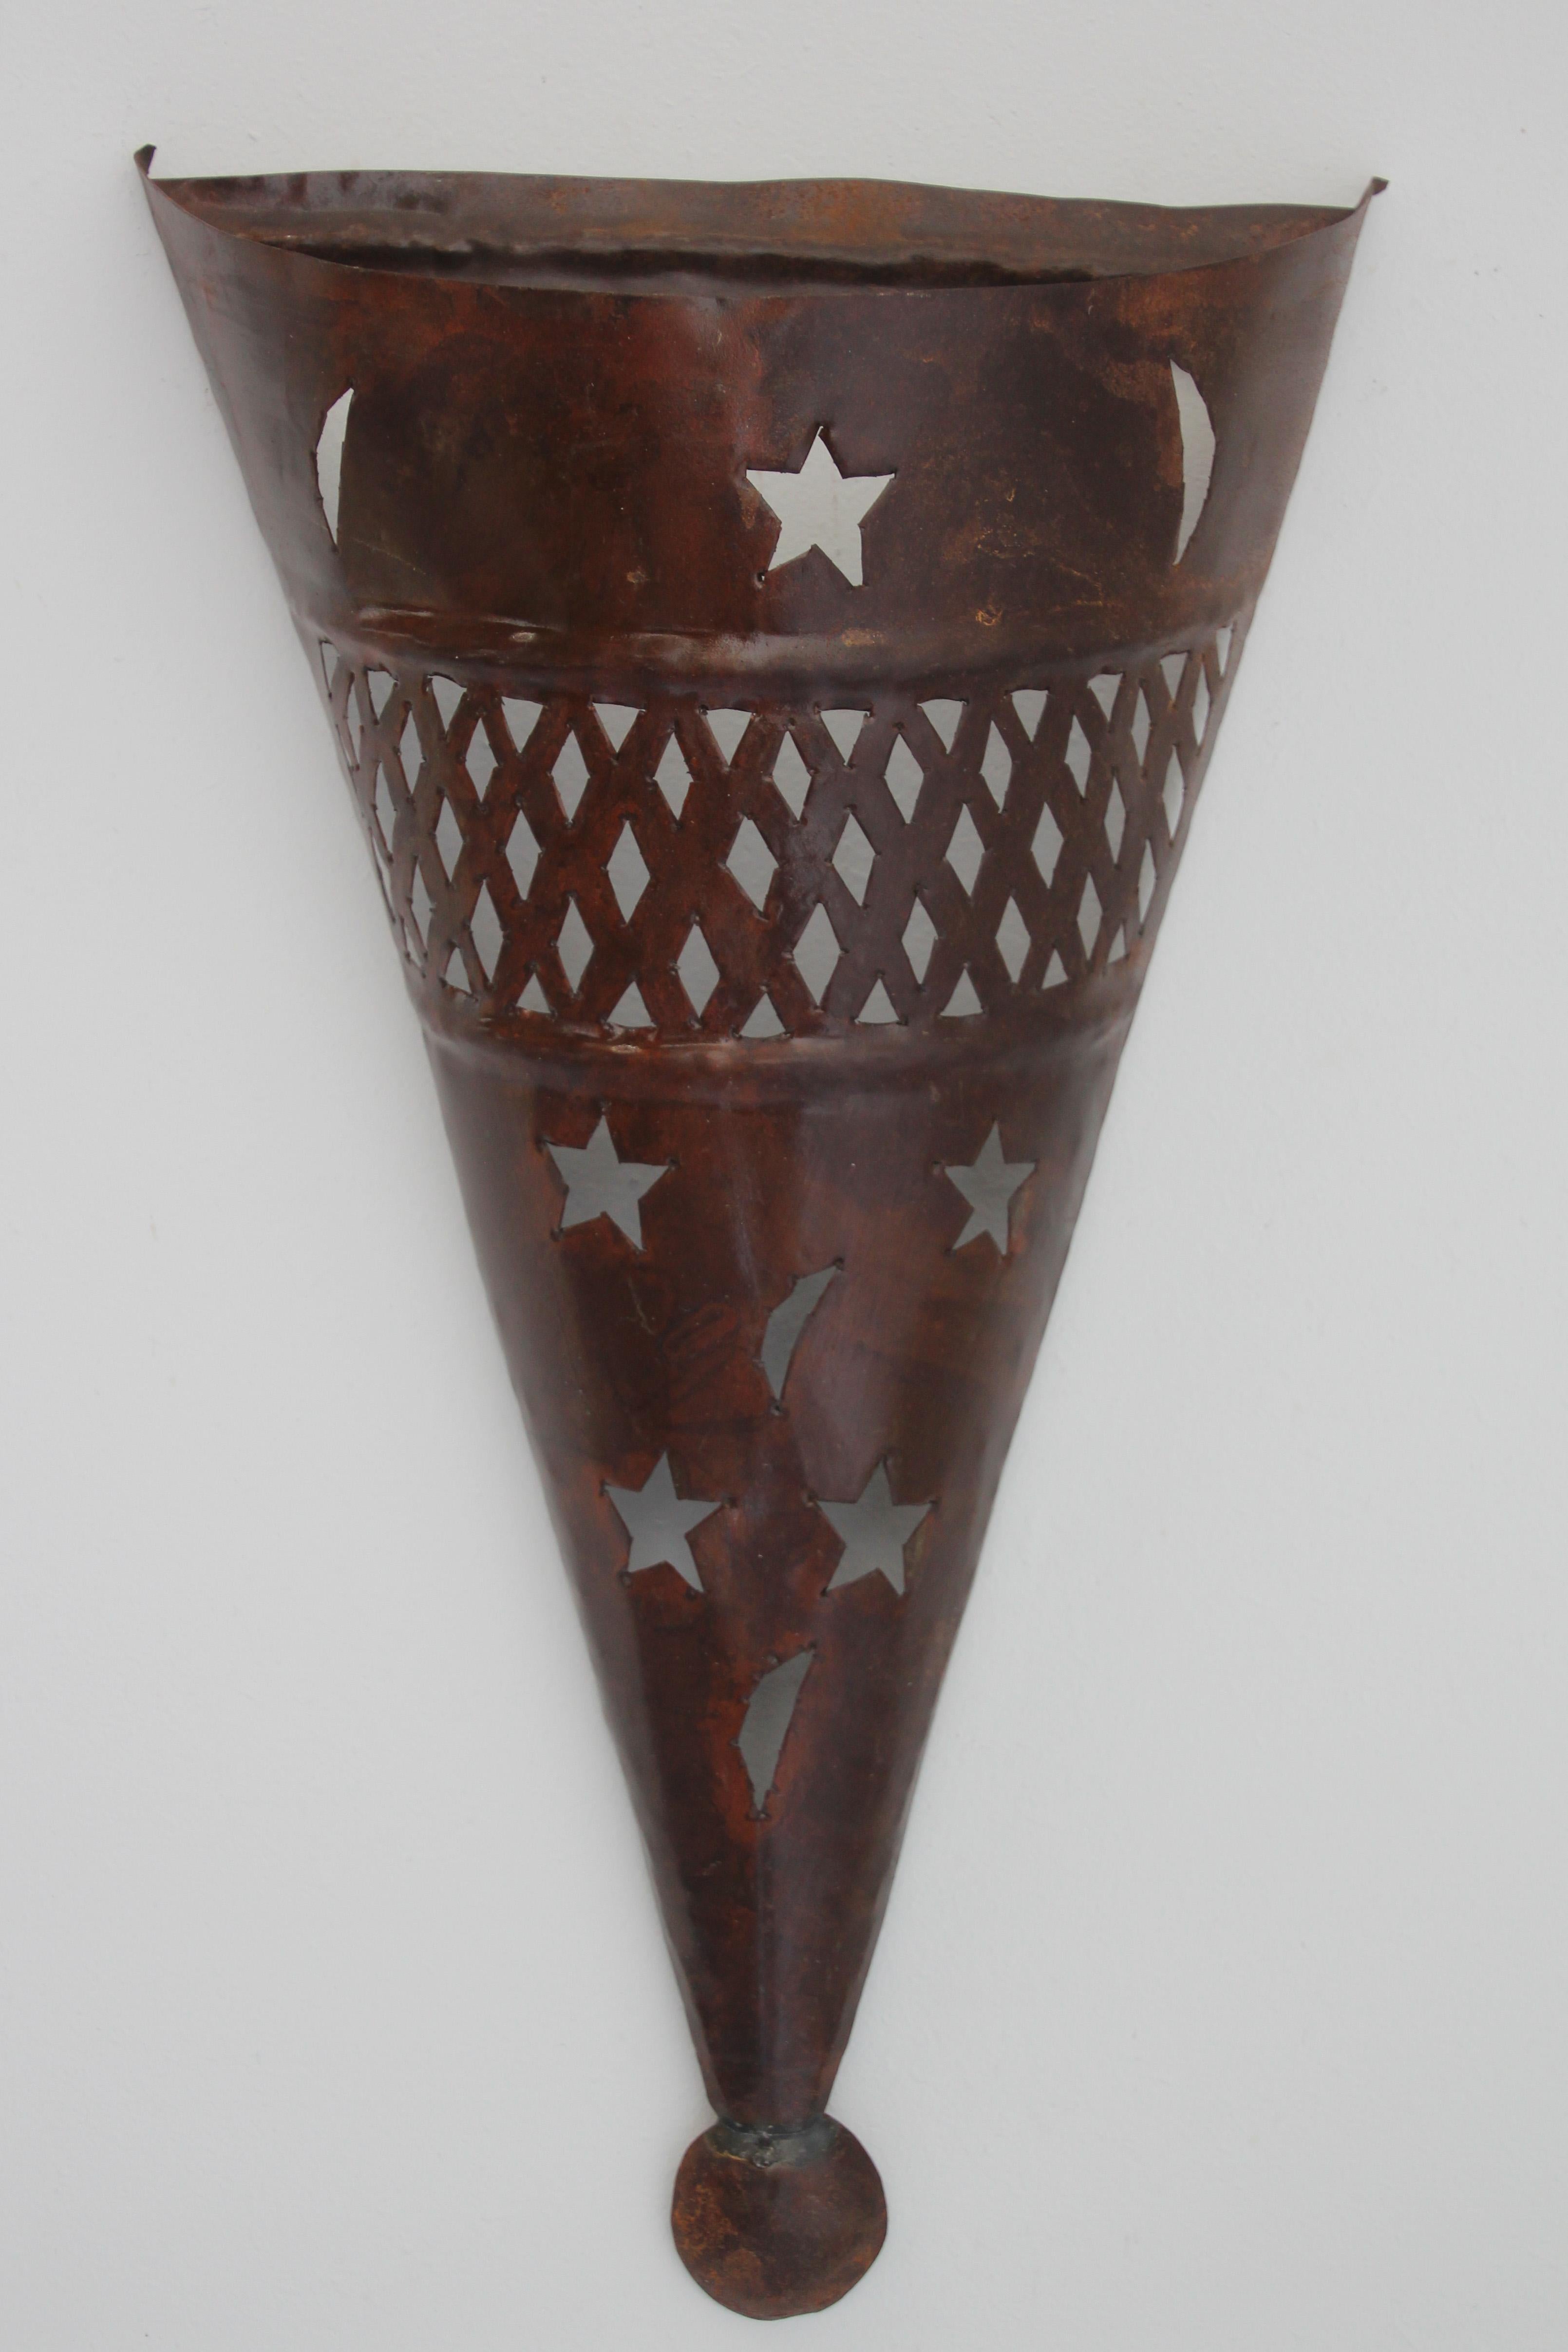 Abat-jour en métal en forme de cône, de style marocain et espagnol, fabriqué à la main.
Abat-jour d'applique Hispano Moresque avec des étoiles et des croissants de lune découpés.
Patine de finition rouille foncée,
À utiliser à l'intérieur ou à